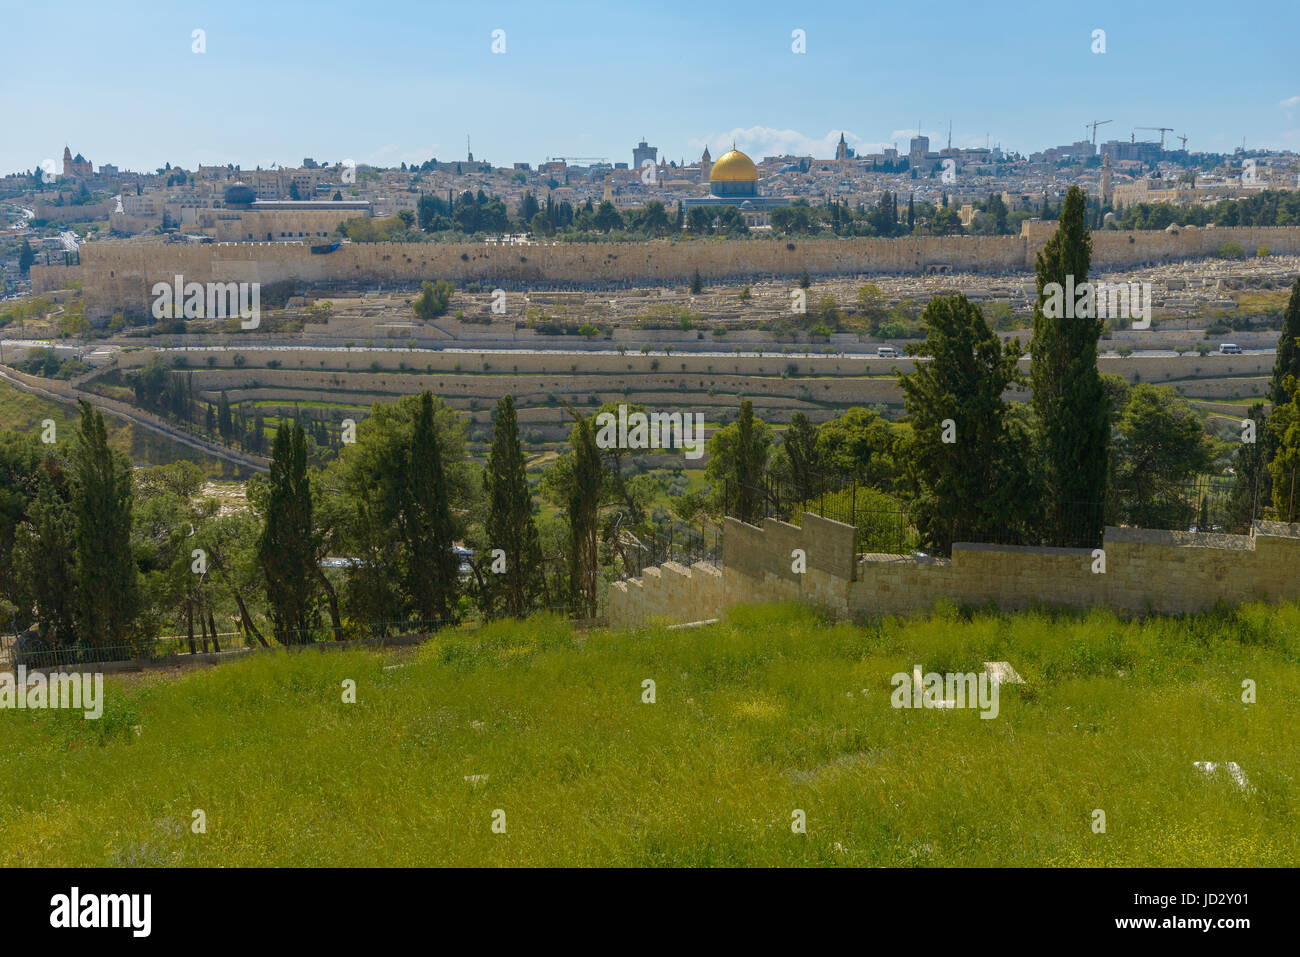 Vue panoramique sur la vieille ville de Jérusalem et le Mont du Temple, Dôme du Rocher et la mosquée Al Aqsa du Mont des Oliviers à Jérusalem Banque D'Images